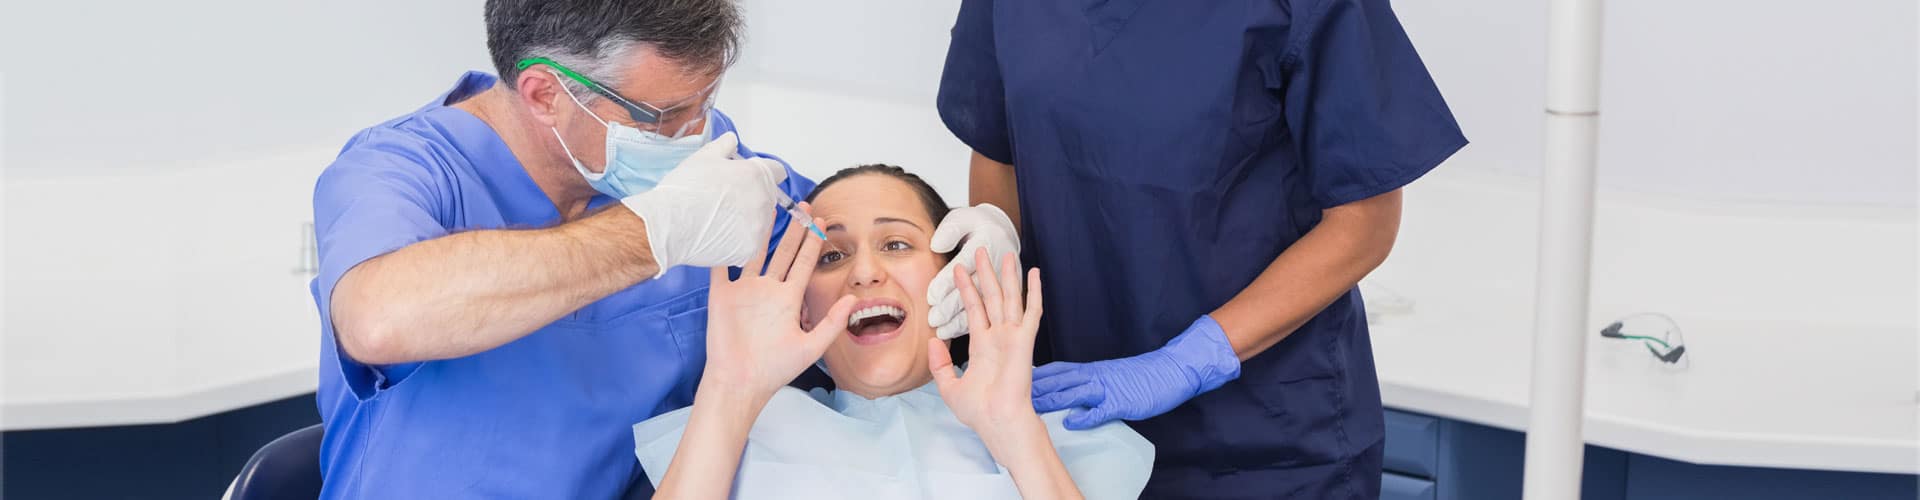 Zahnarzt Angstpatienten